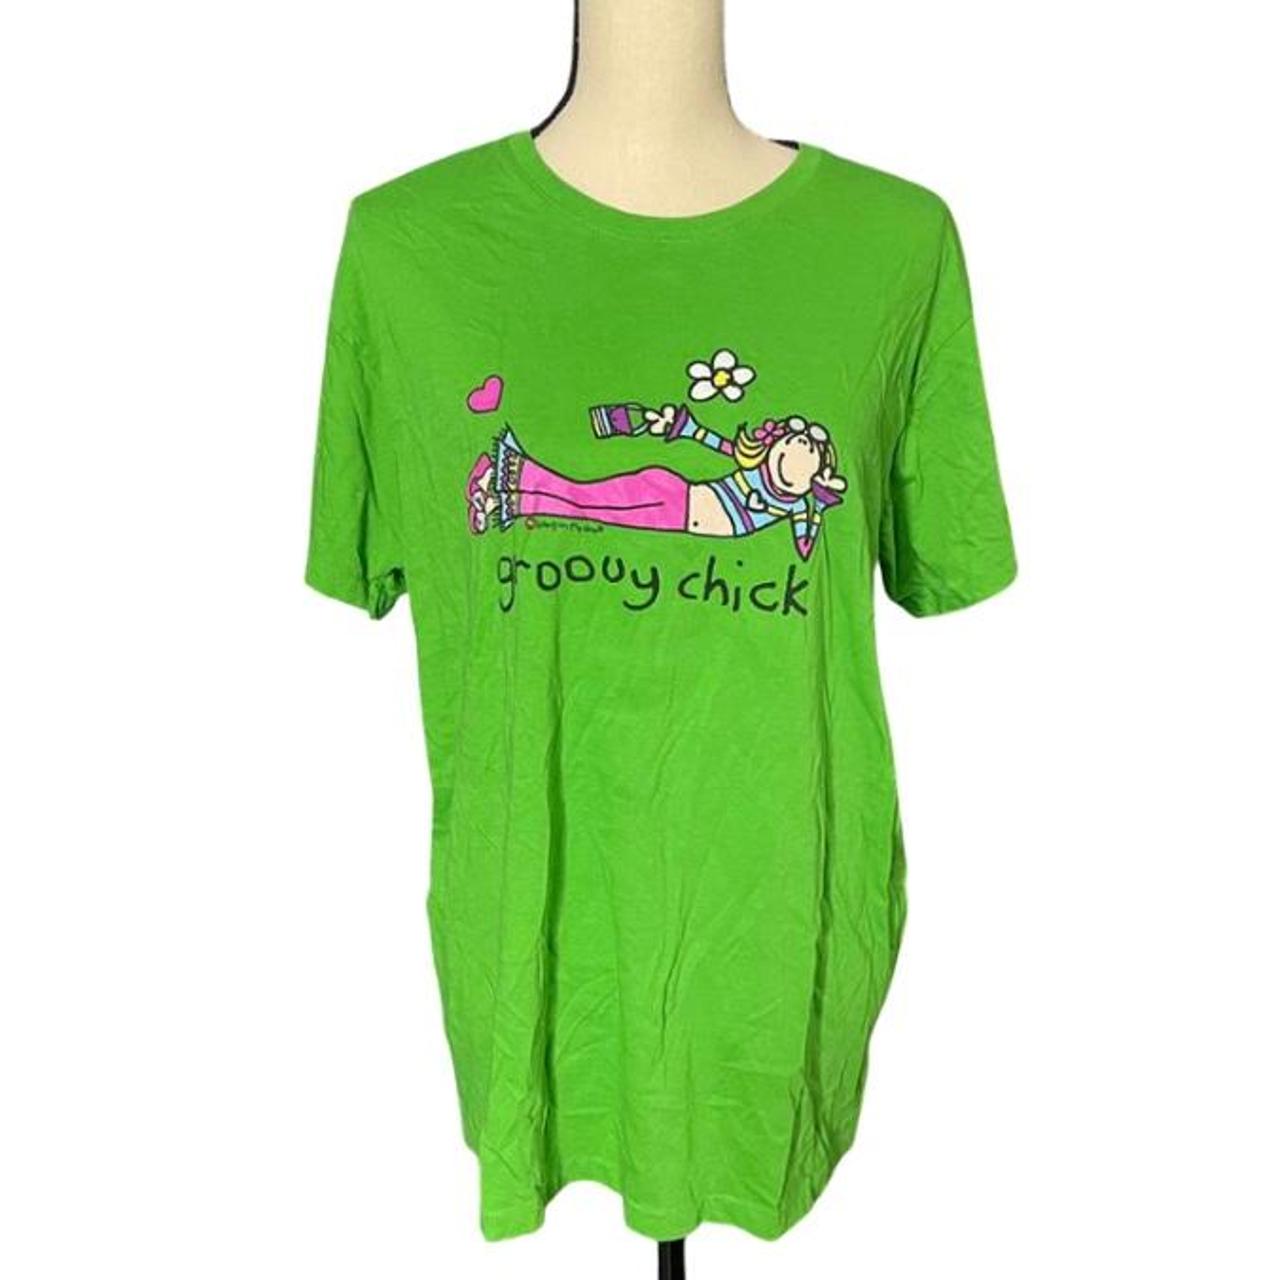 Daisy Street Women's Green and Pink T-shirt